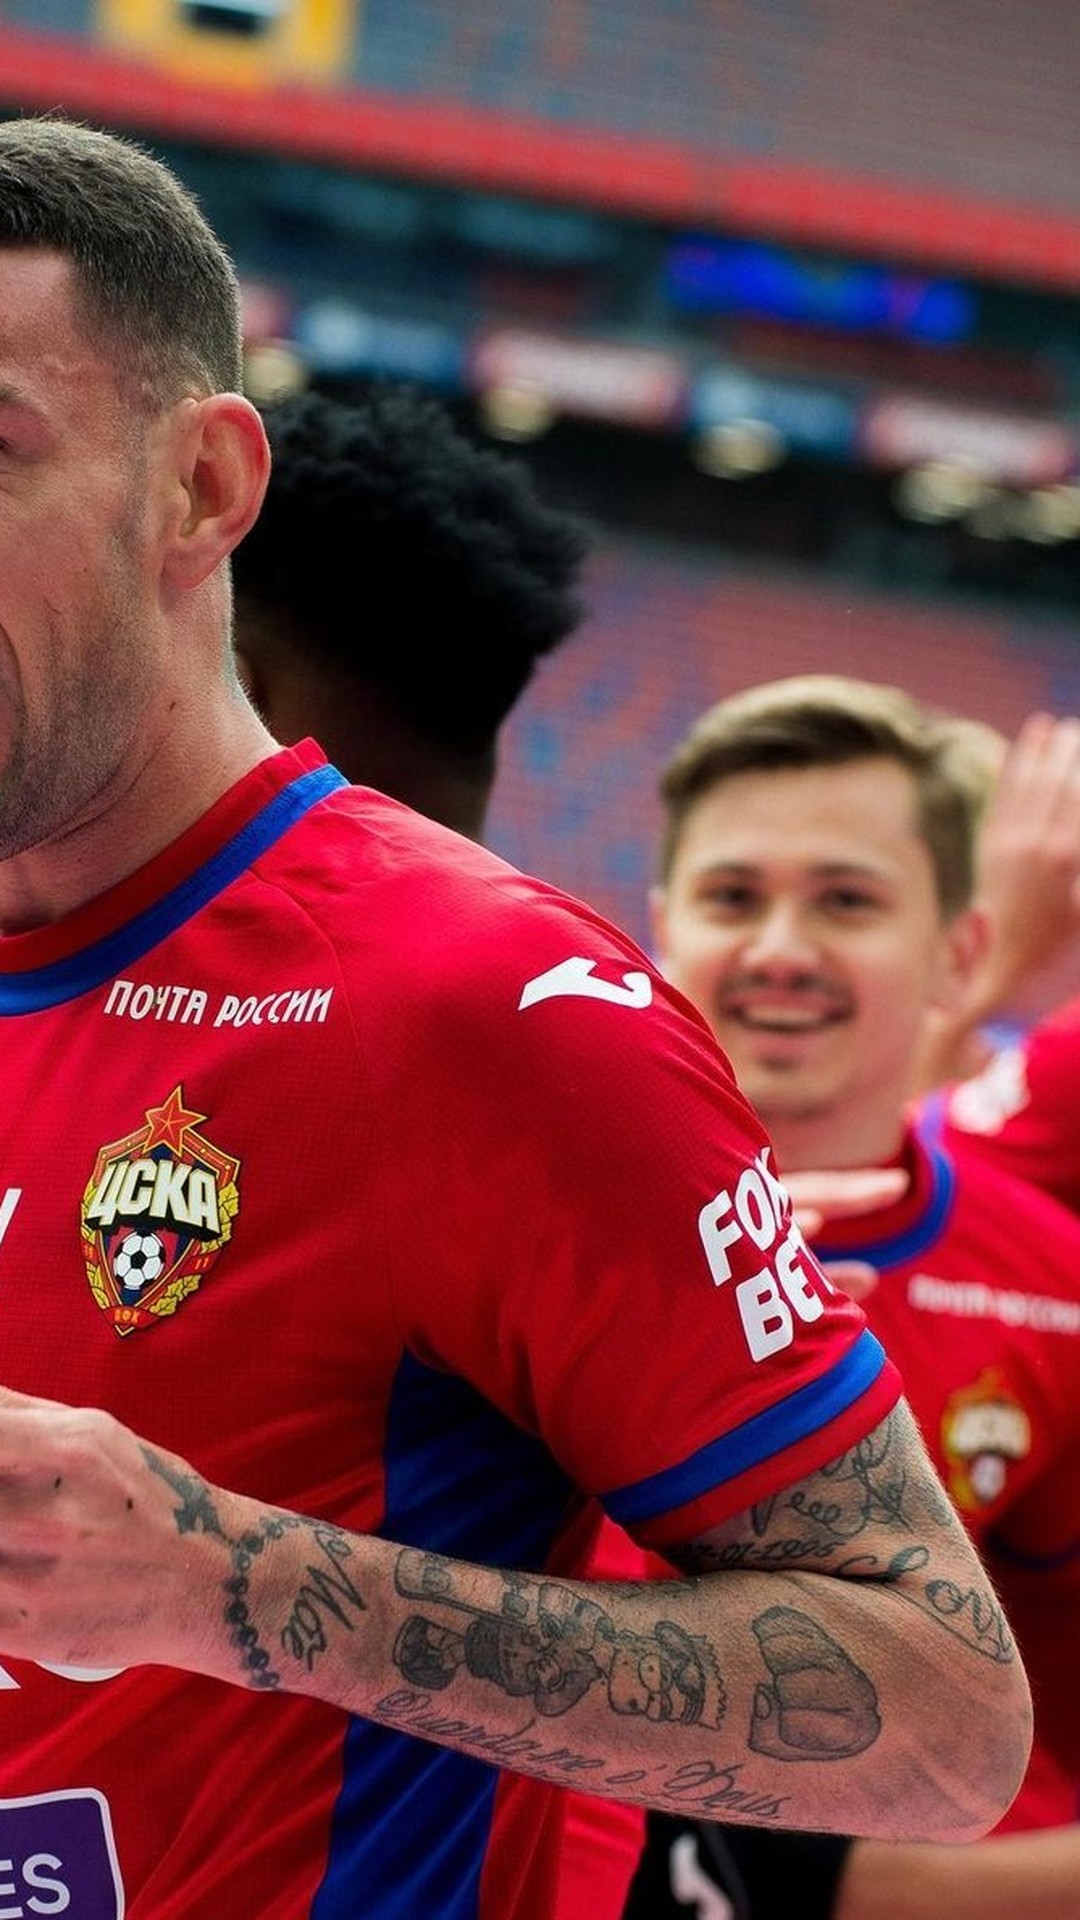 Clubes russos apelam contra Uefa para disputarem torneios europeus